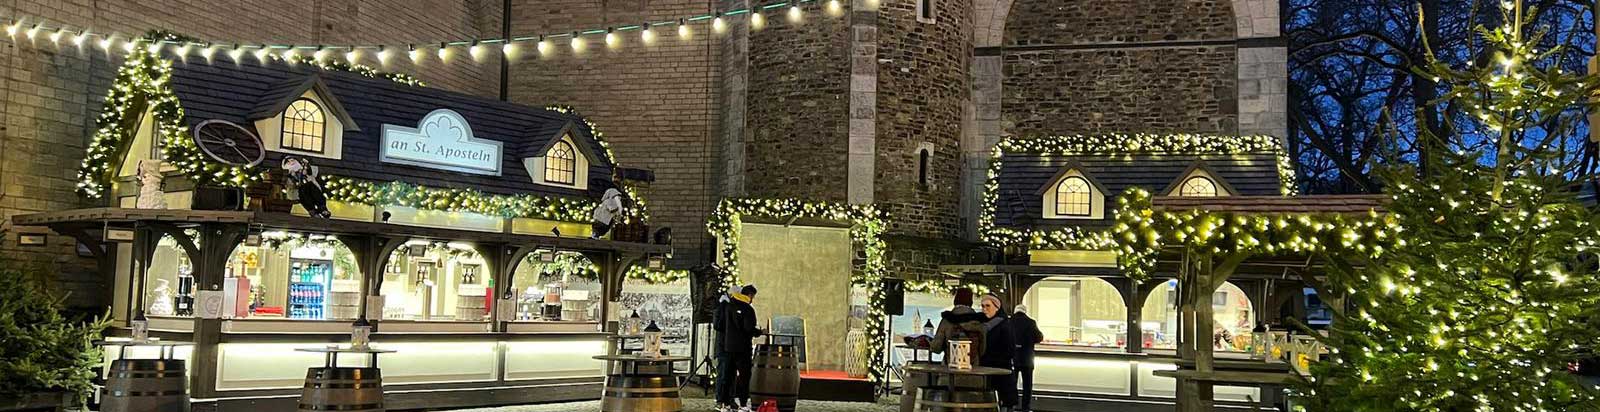 Weihnachtsmarkt an St. Aposteln Köln ★ Gemütliches Beisammensein auf dem Kirchplatz